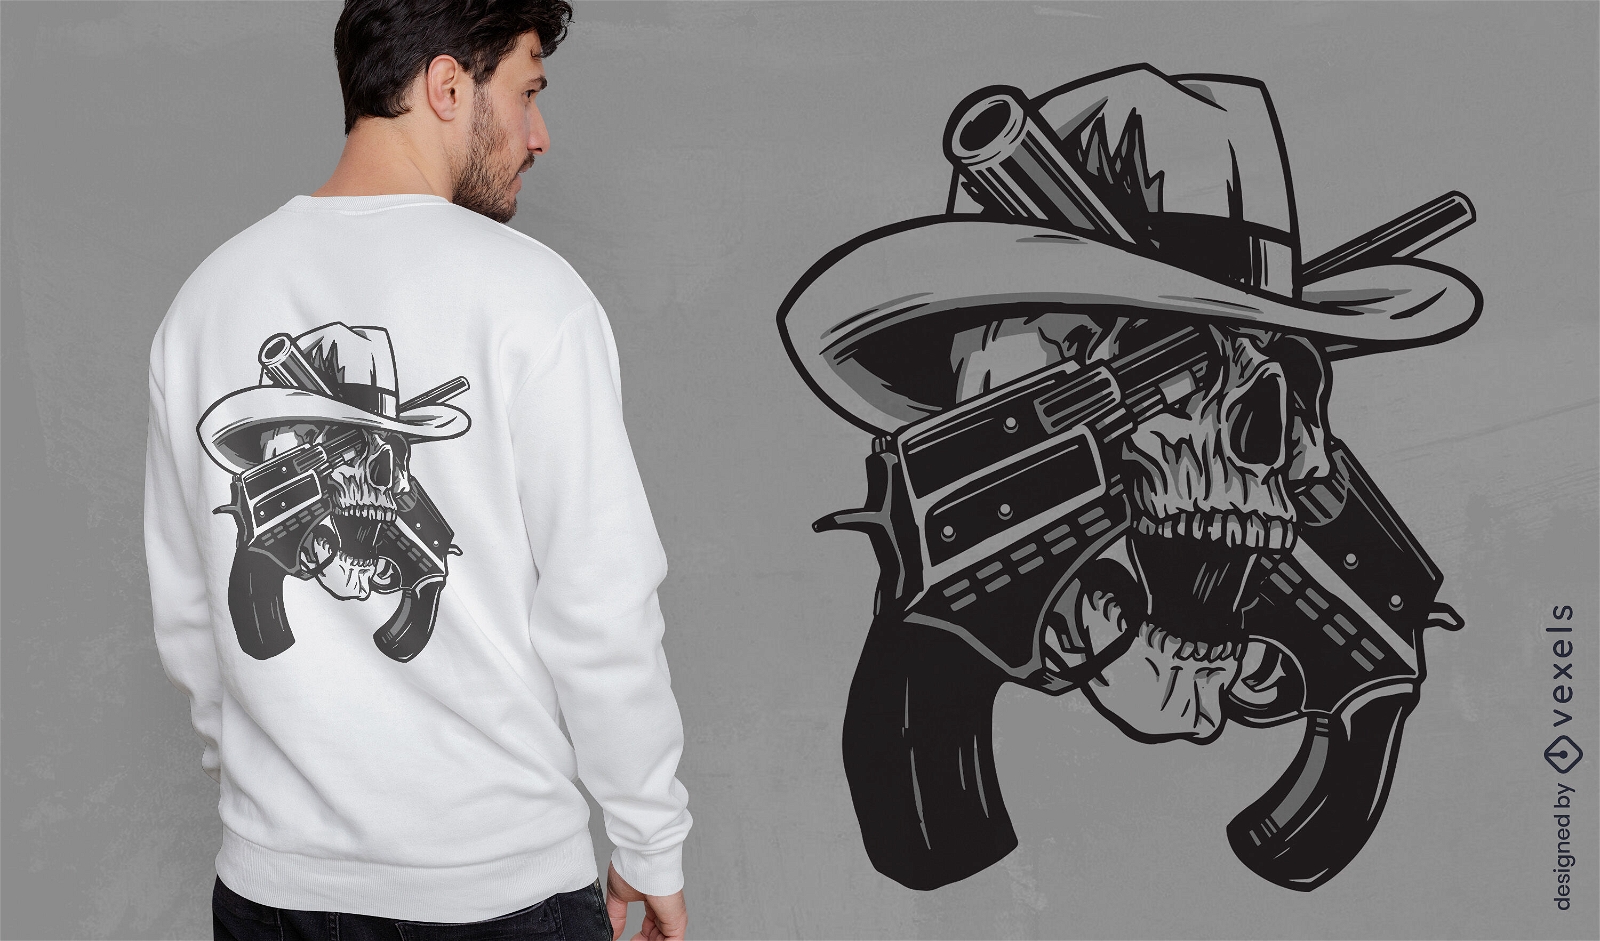 Skull guns t-shirt design